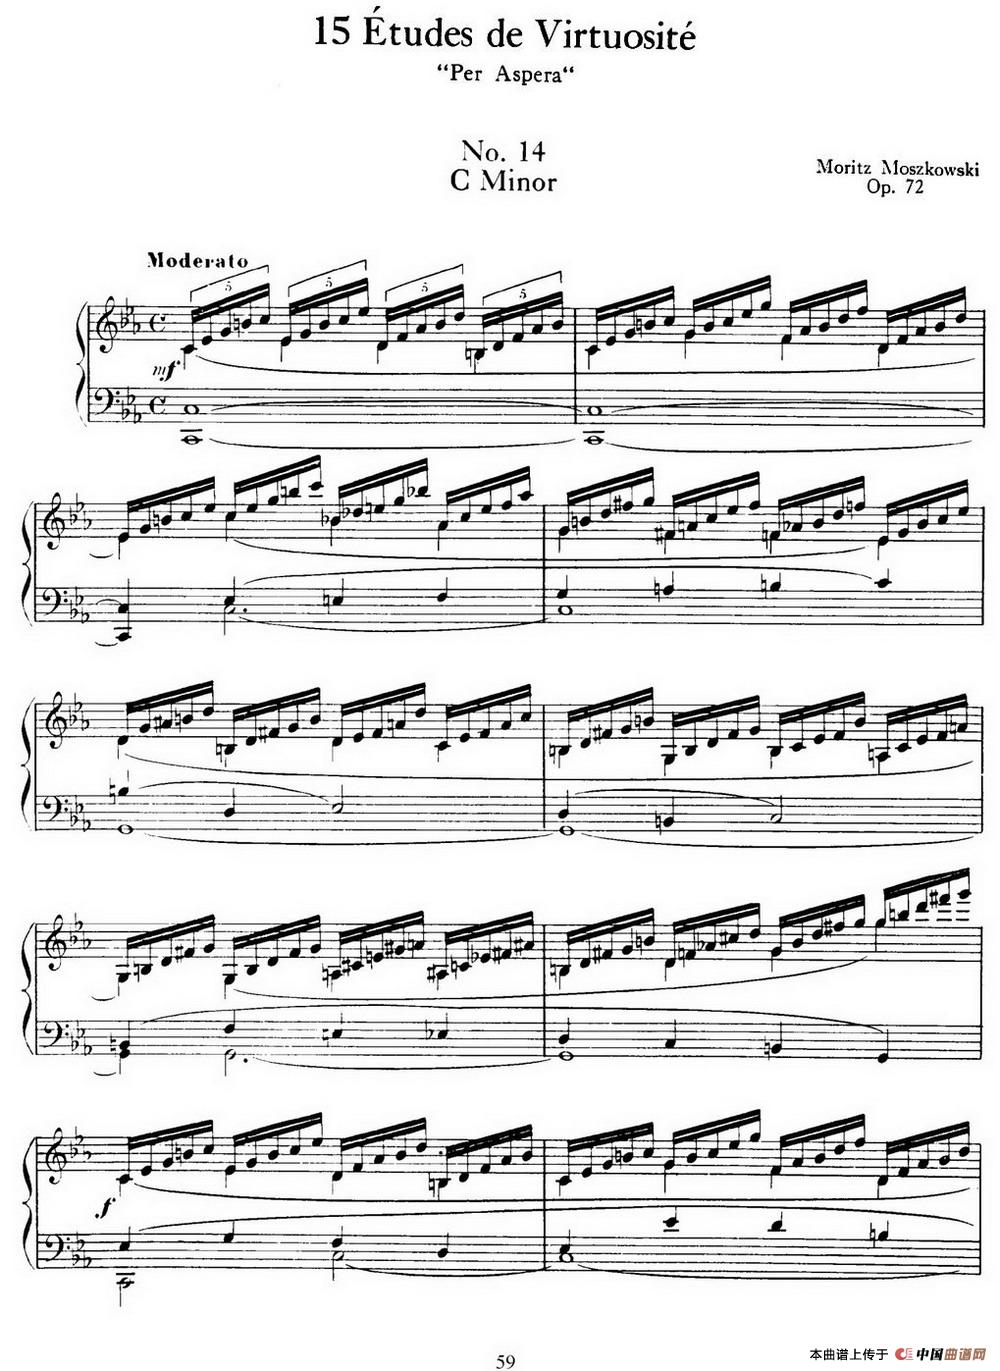 15 Etudes de Virtuosité Op.72 No.14（十五首钢琴练习曲之十四）(1)_059=.jpg